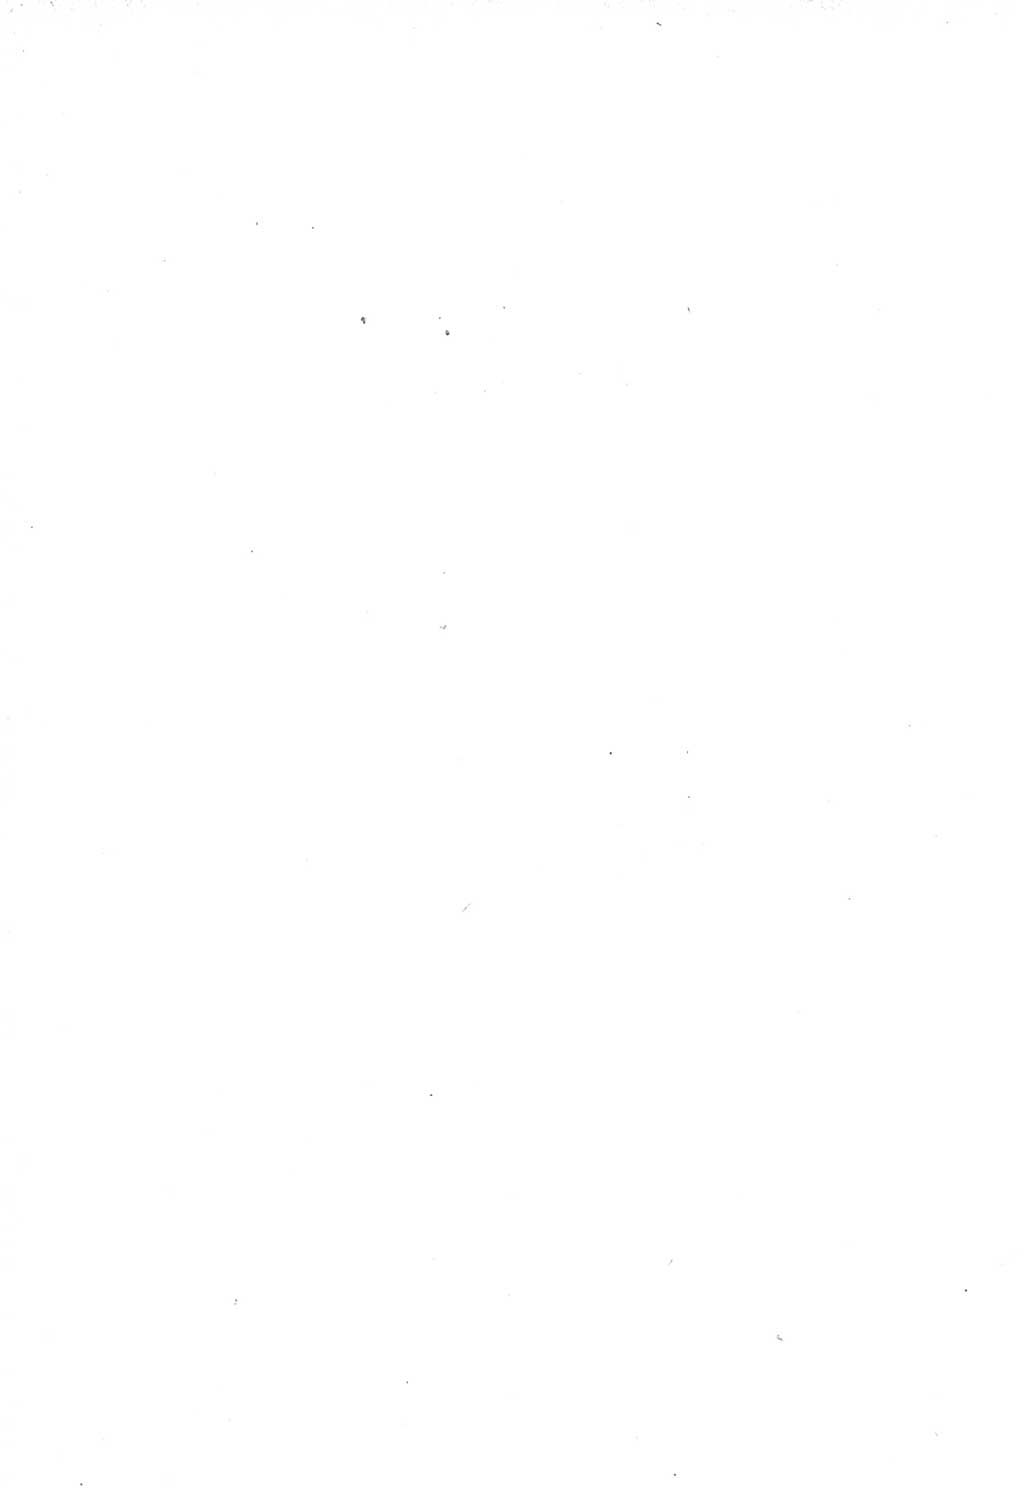 Protokoll der Verhandlungen des Ⅶ. Parteitages der Sozialistischen Einheitspartei Deutschlands (SED) [Deutsche Demokratische Republik (DDR)] 1967, Band Ⅰ, Seite 6 (Prot. Verh. Ⅶ. PT SED DDR 1967, Bd. Ⅰ, S. 6)